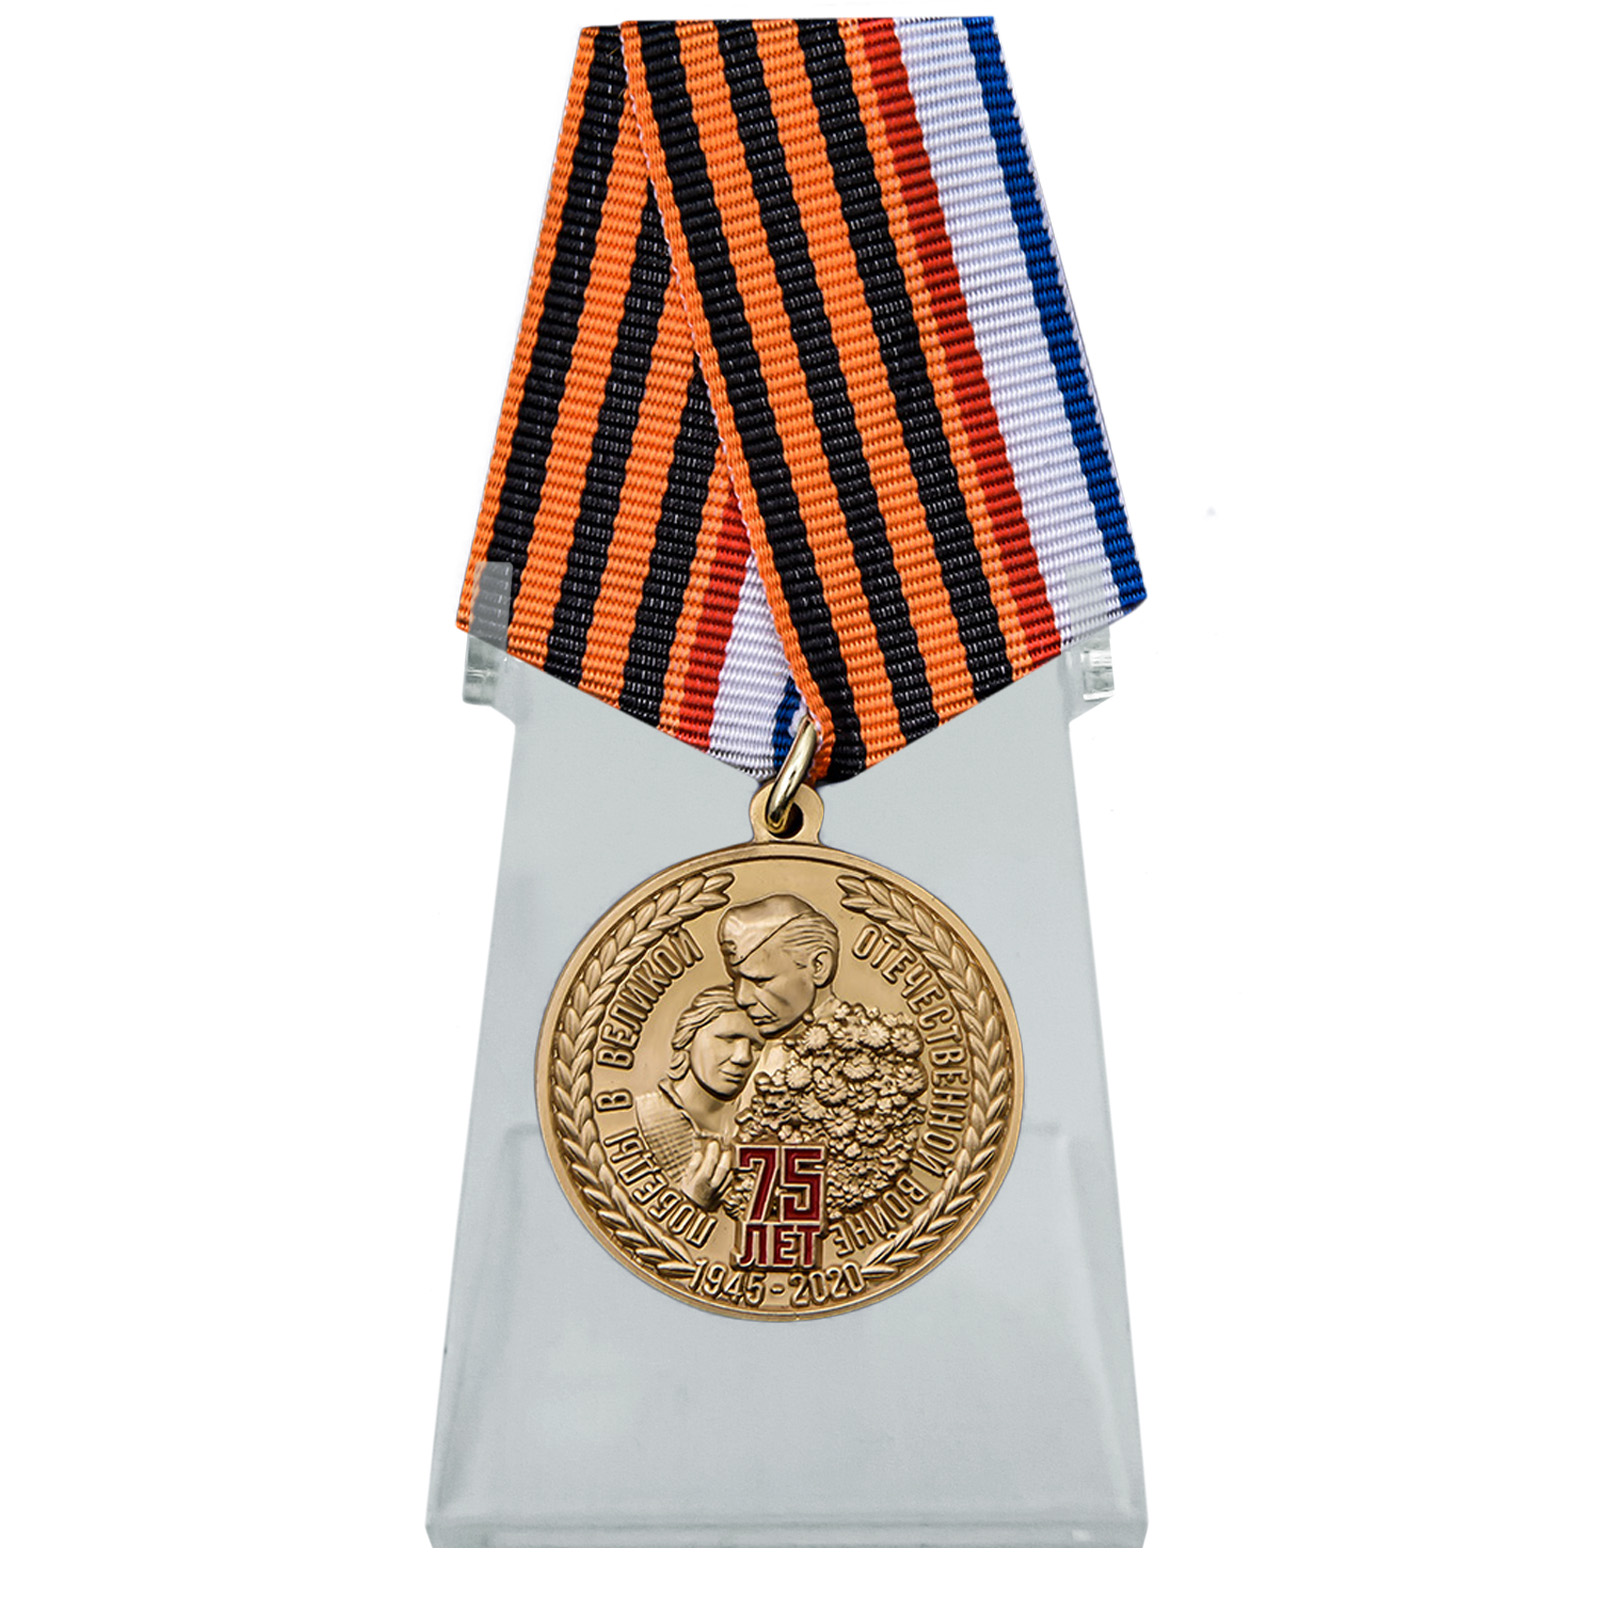 Купить медаль День Победы в ВОВ Республика Крым на подставке в подарок